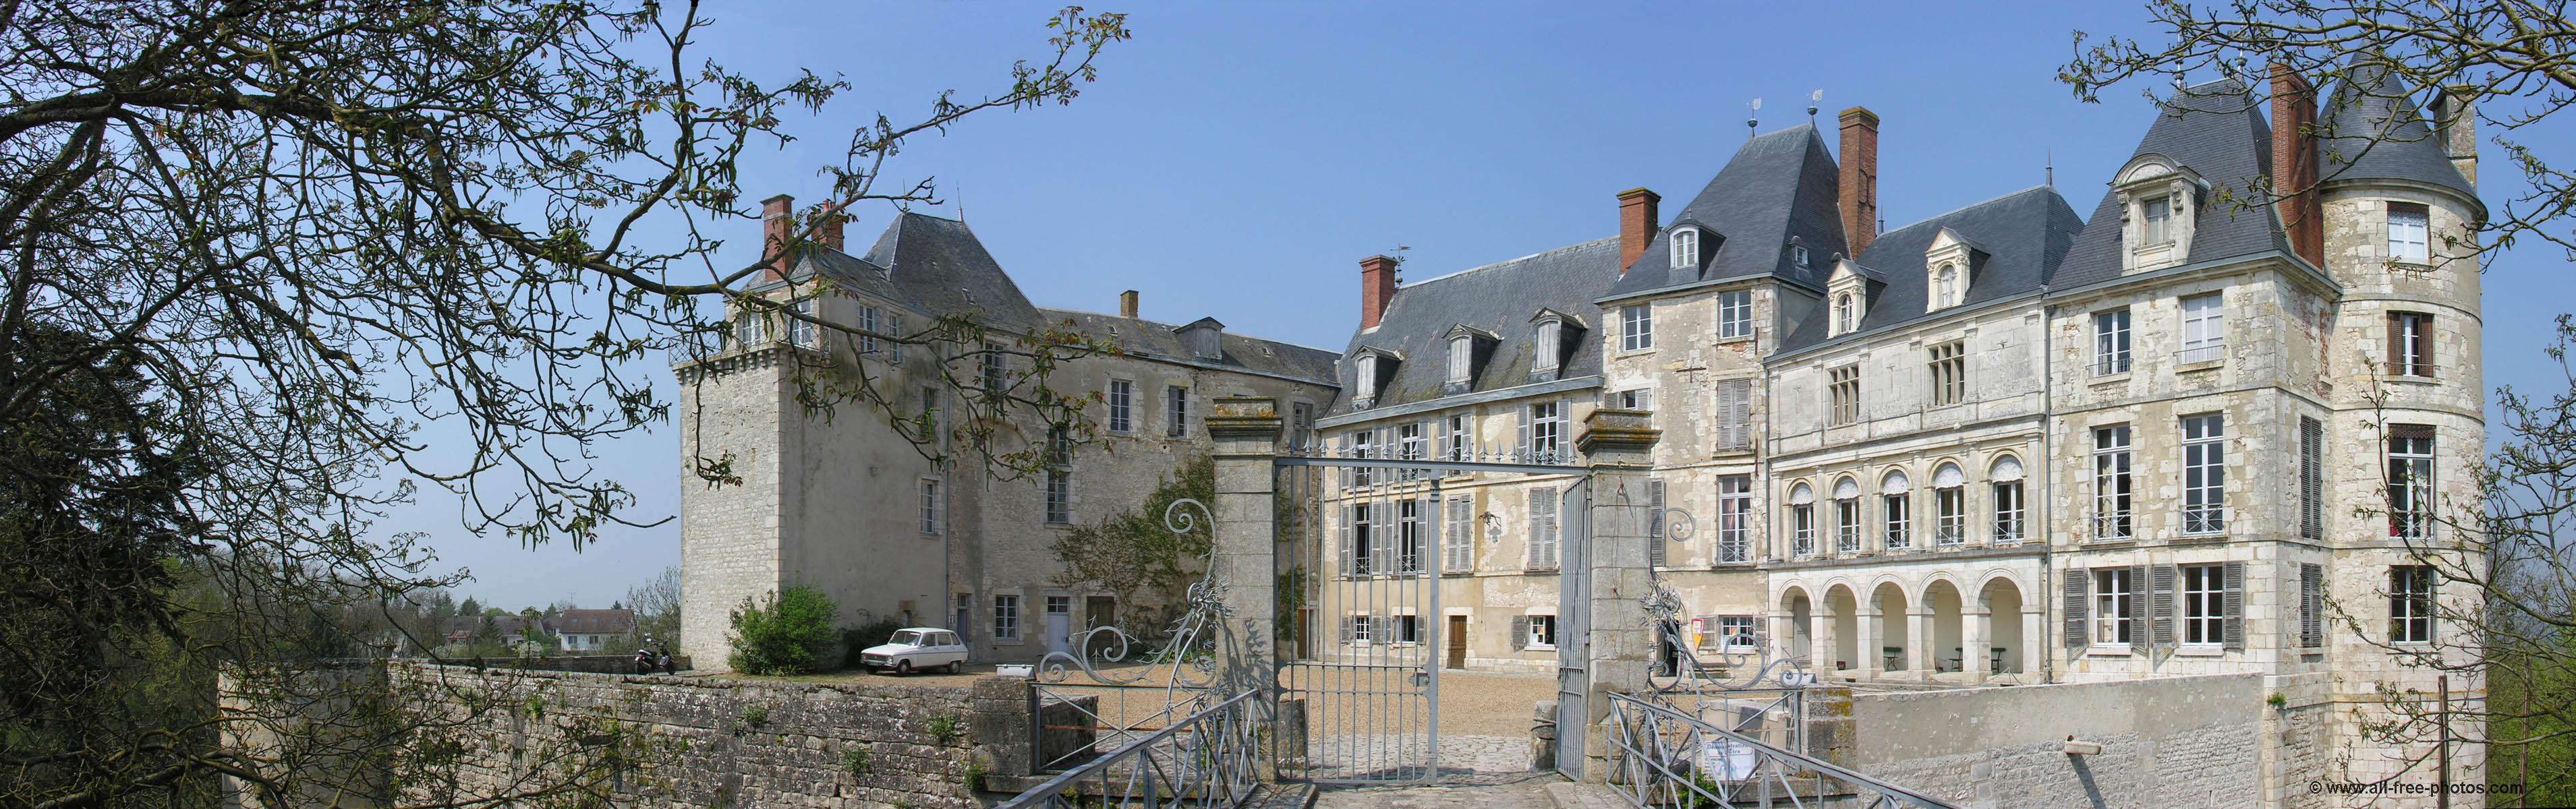 2508-chateau-de-saint-brisson-sur-loire-45.jpg